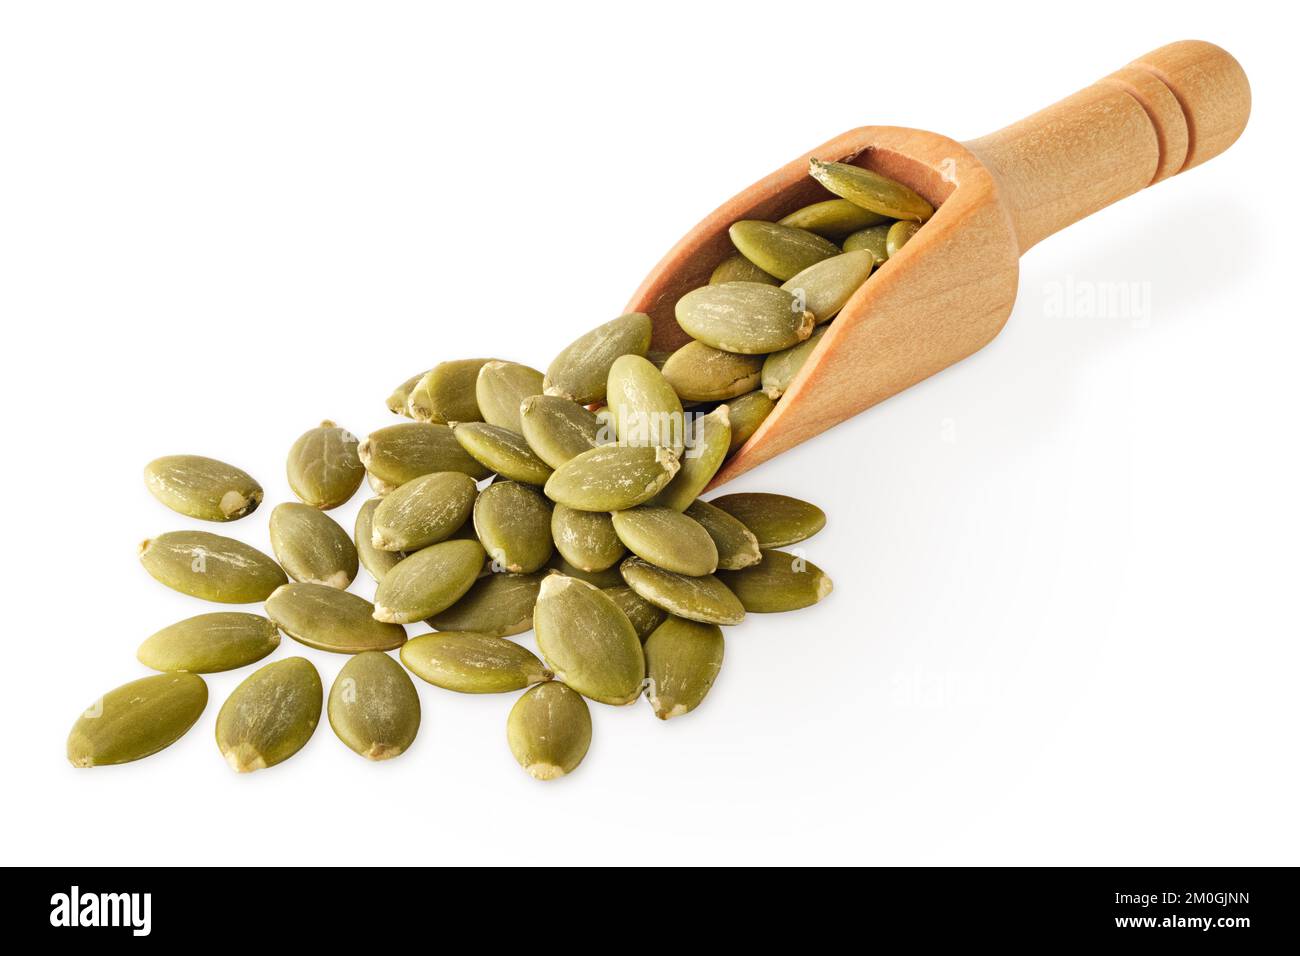 Ingredienti alimentari: Cumulo di semi di zucca secchi pelati in una paletta di legno, isolato su sfondo bianco Foto Stock